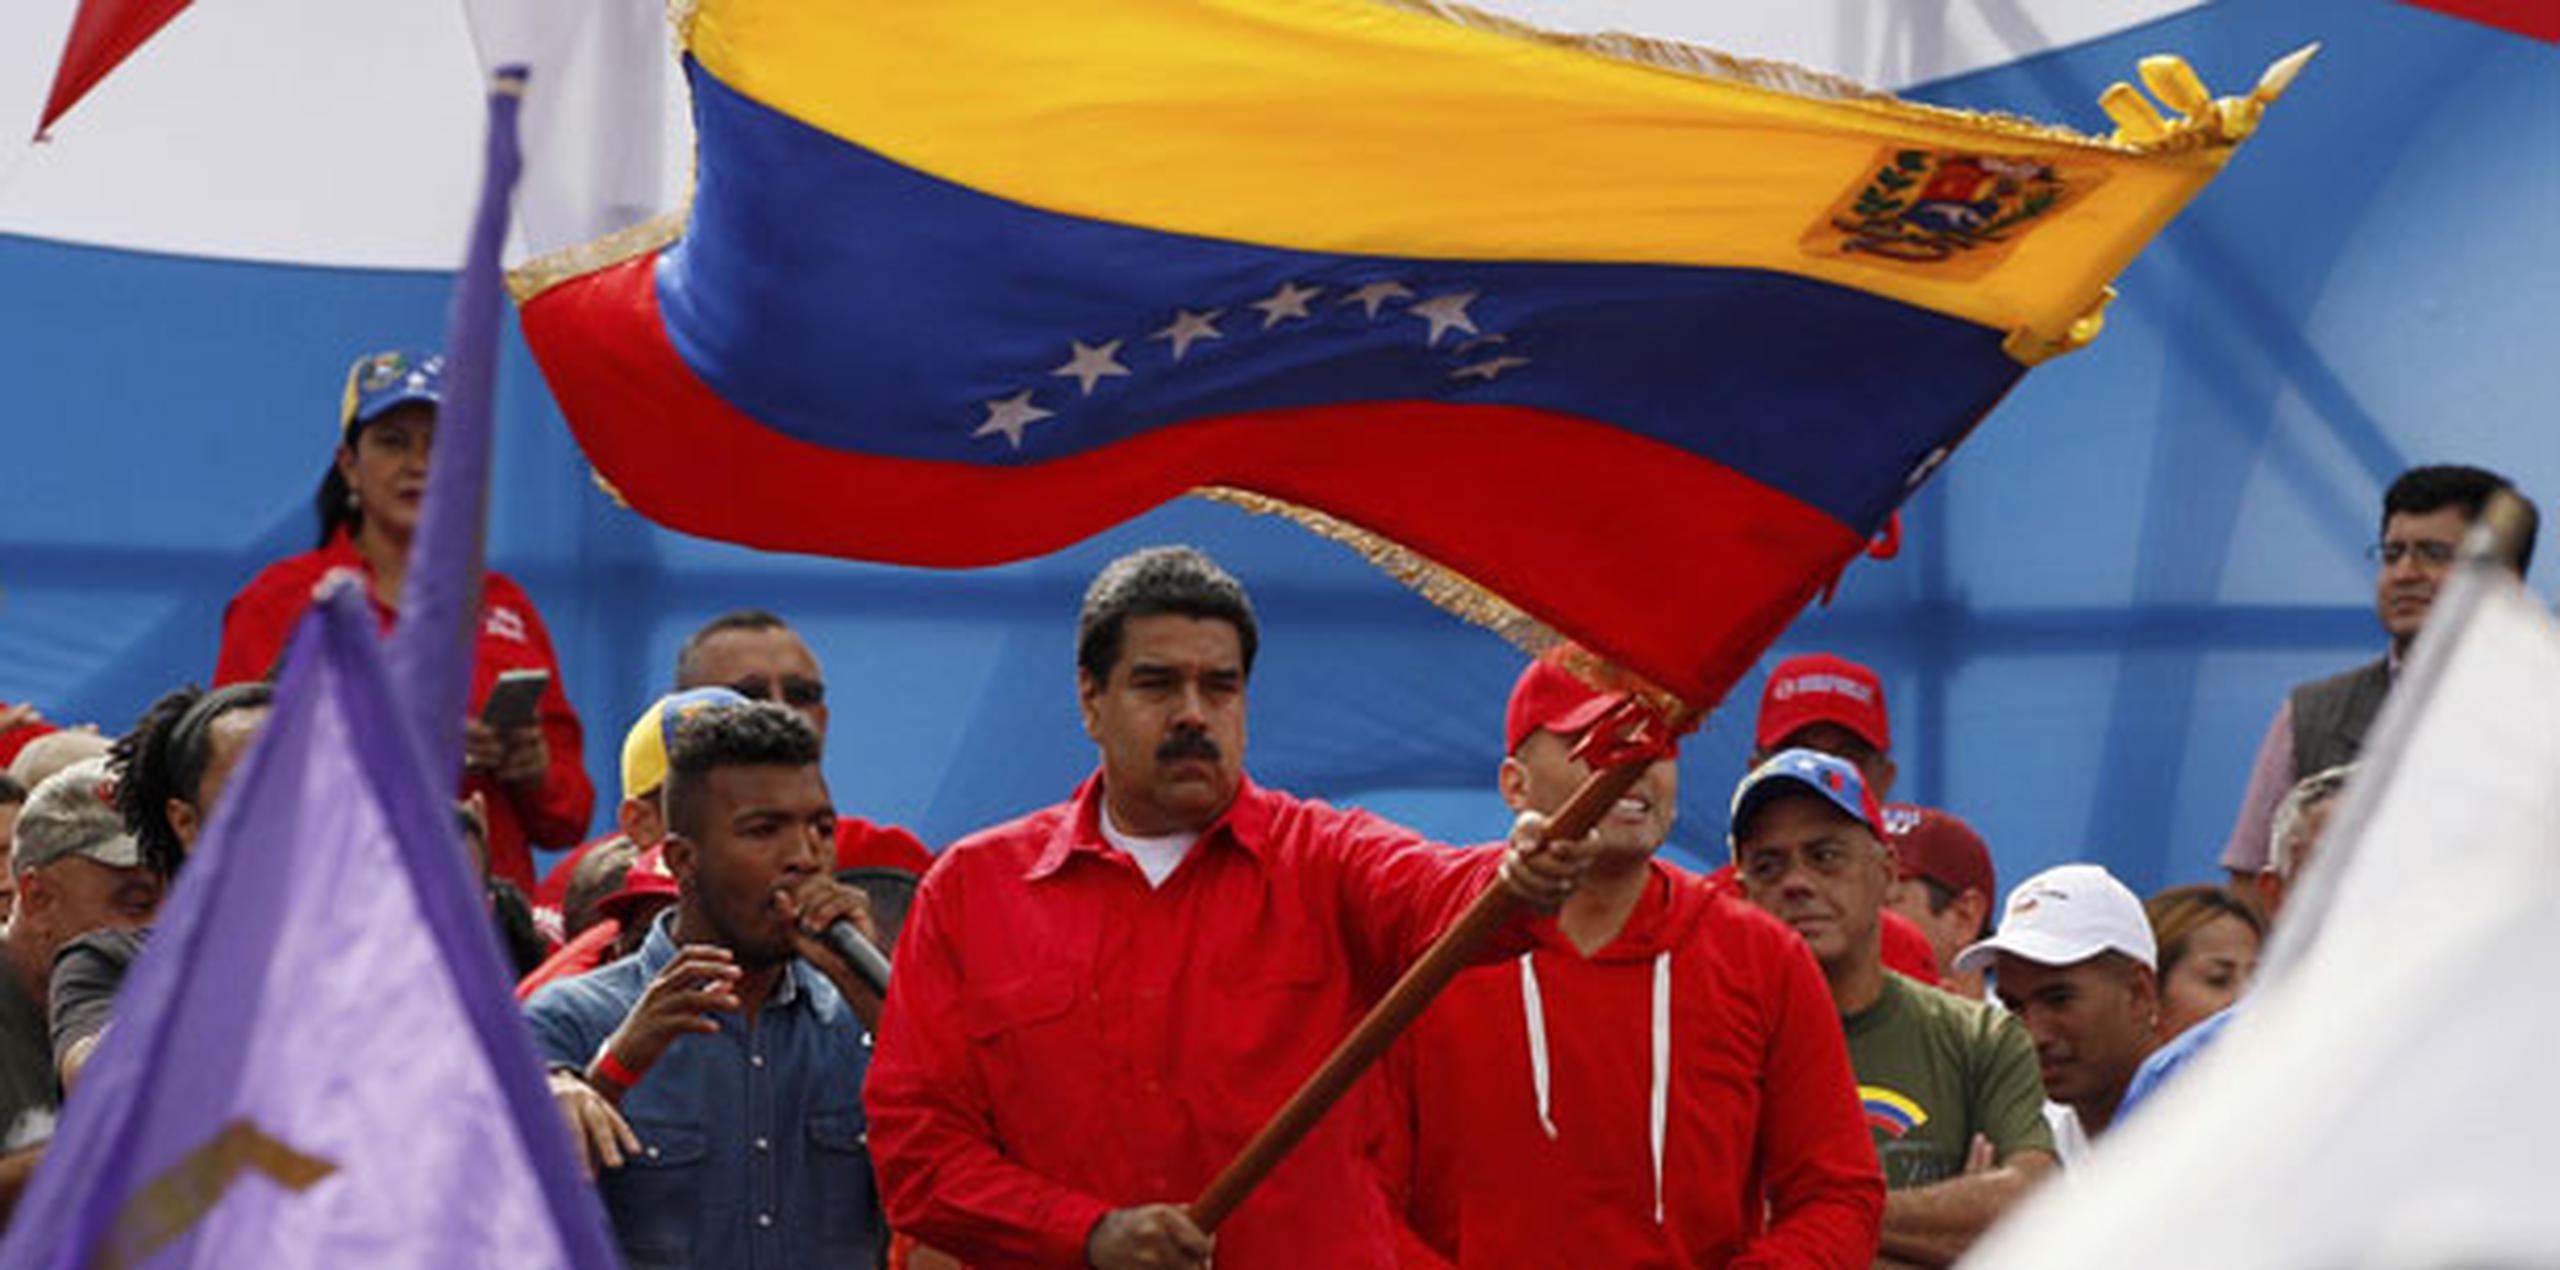 El gobierno estadounidense impuso sanciones a más de 10 funcionarios y exfuncionarios venezolanos la semana pasada. (Archivo)